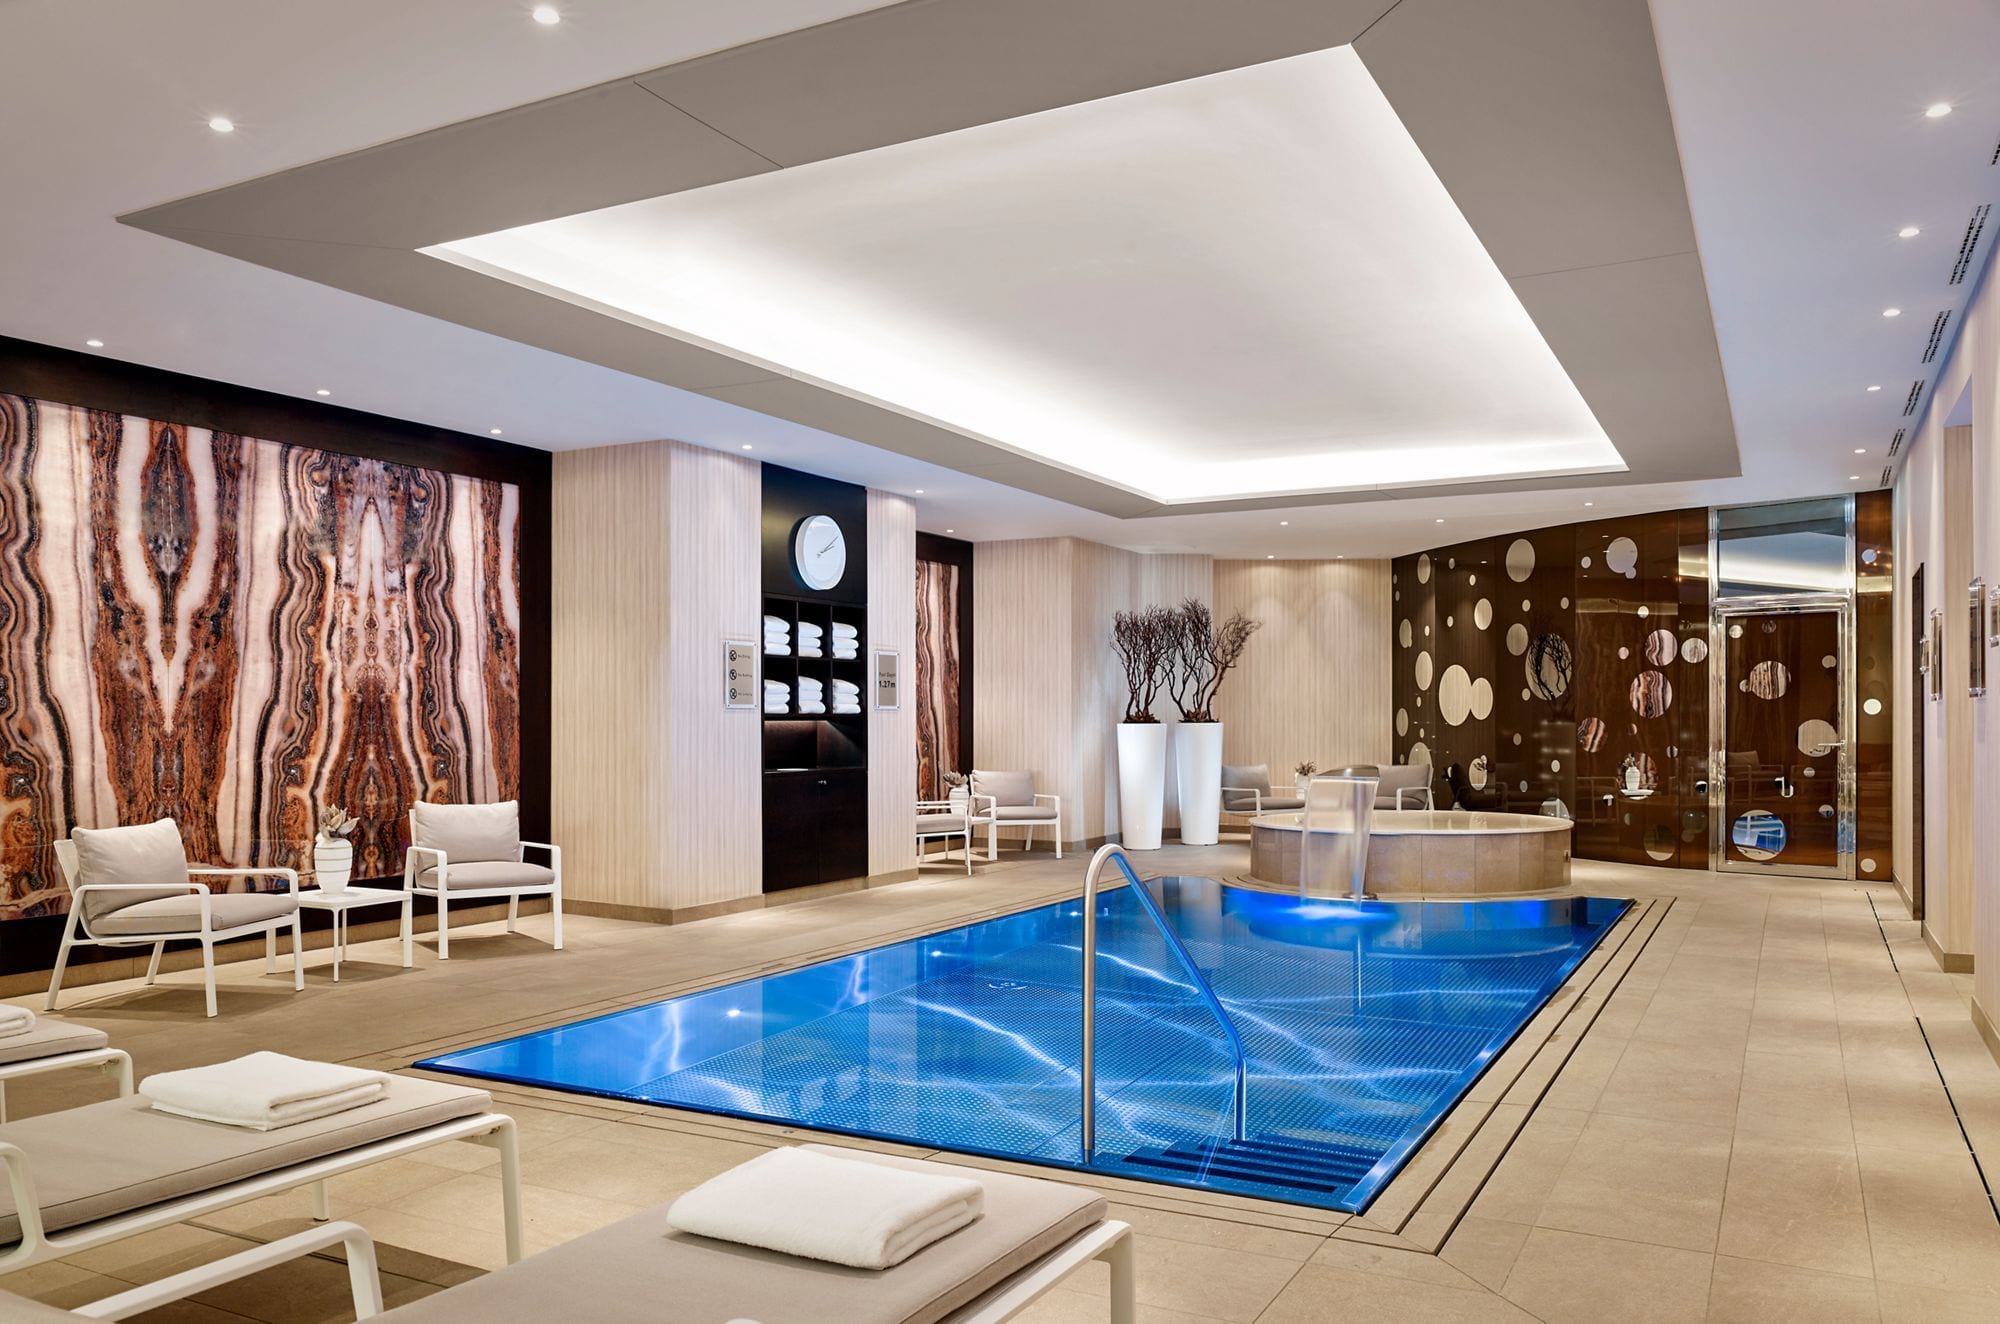 Überlauf-Schwimmbecken IMAGINOX im Hotel Ritz Carlton in Berlin | IMAGINOX